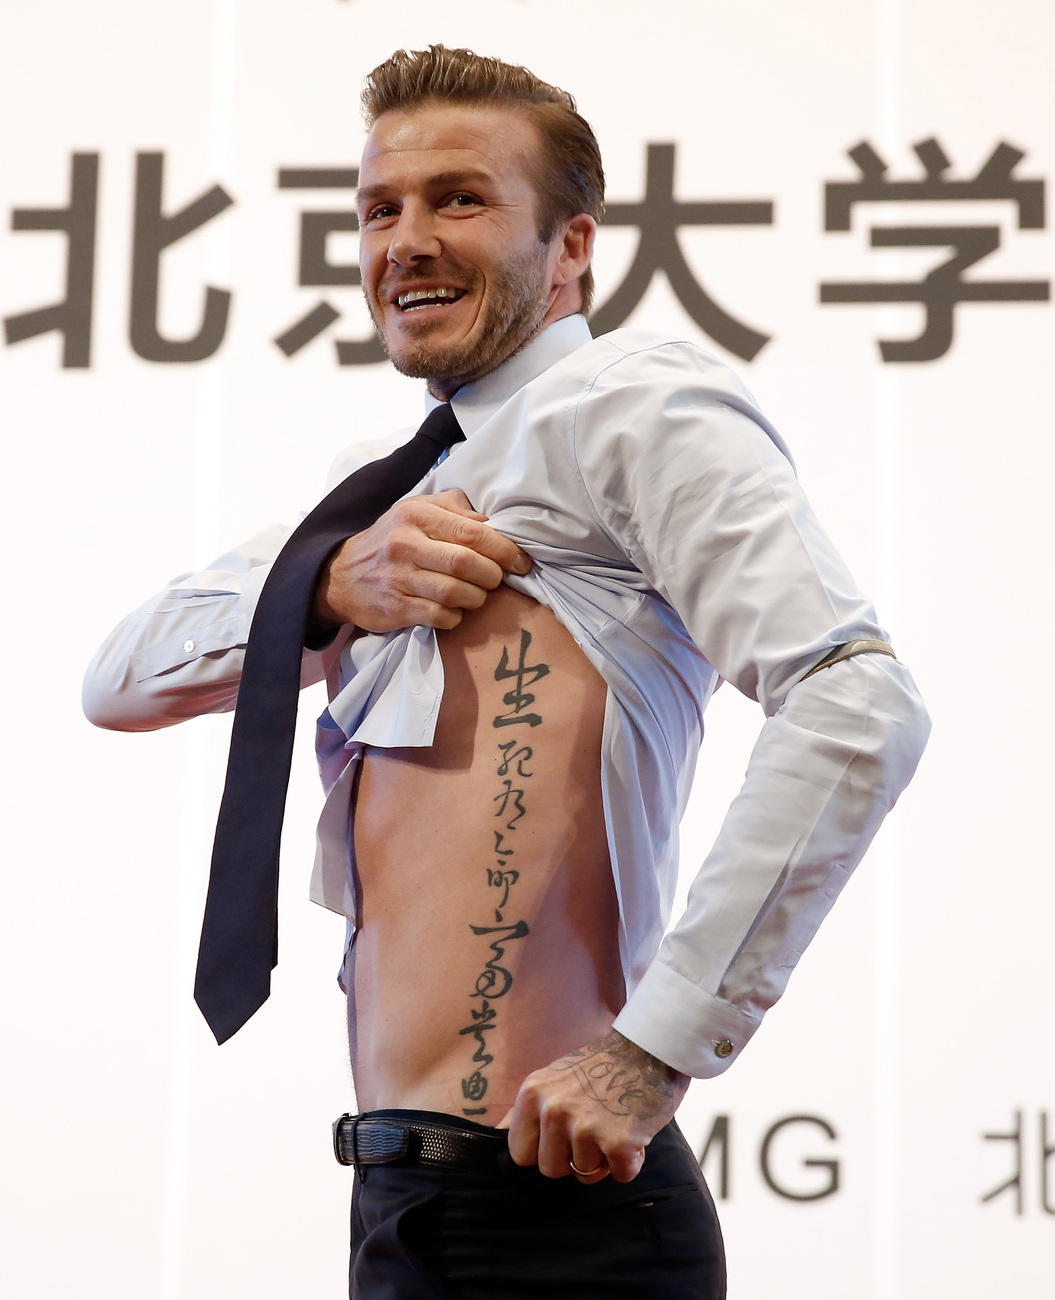 David Beckham megmutatja a tetoválását